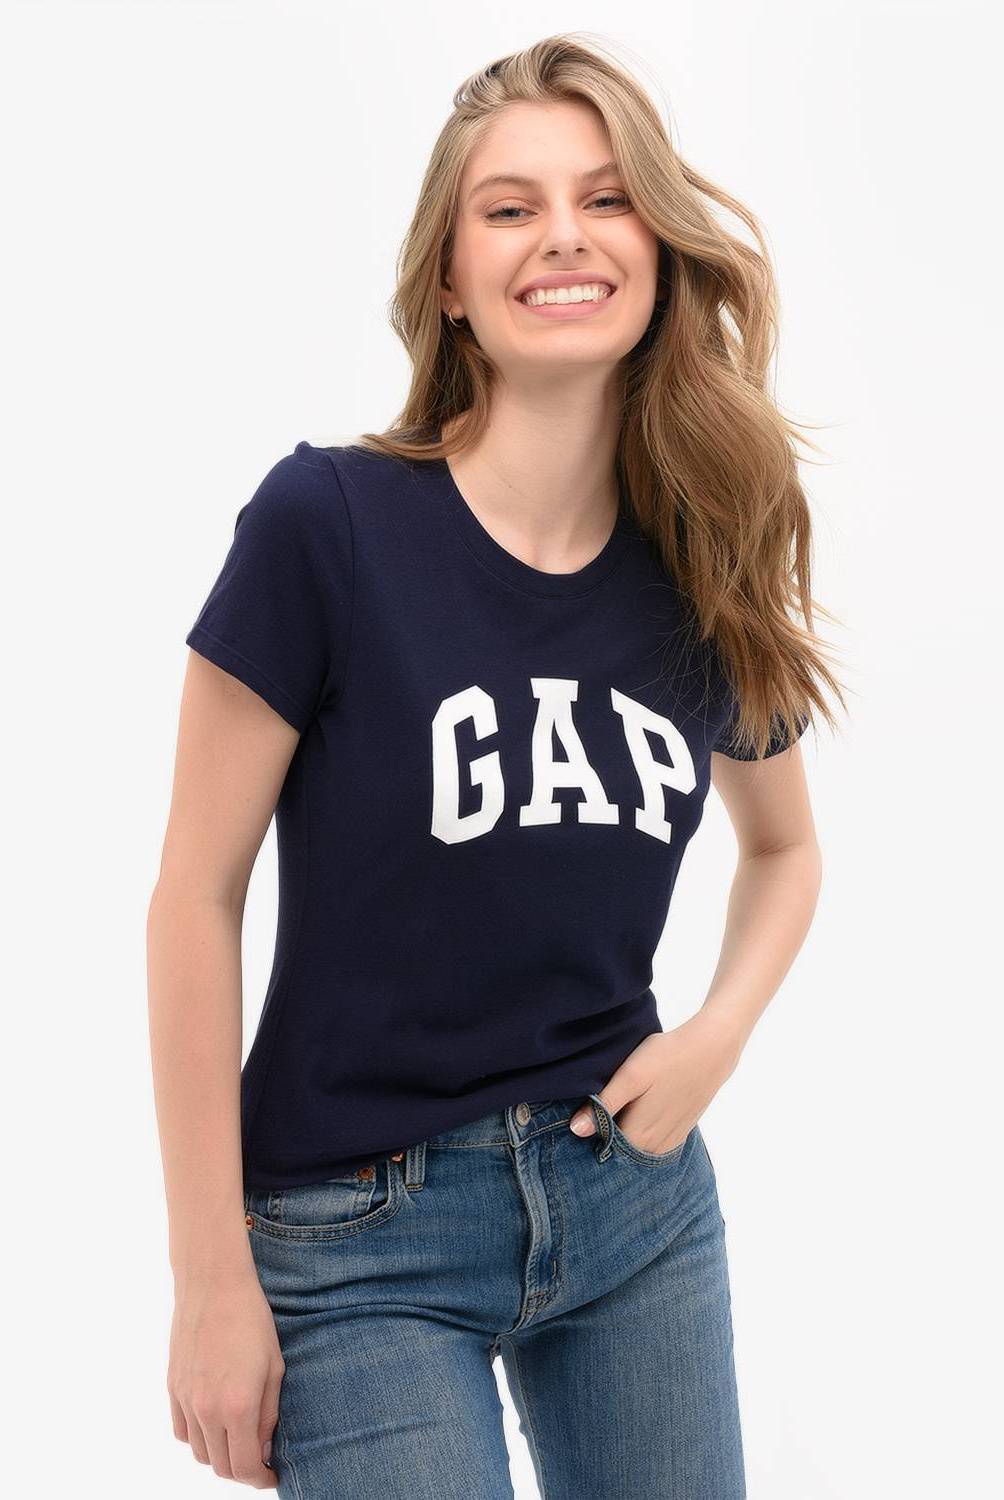 GAP - Gap Polera Manga Corta Mujer